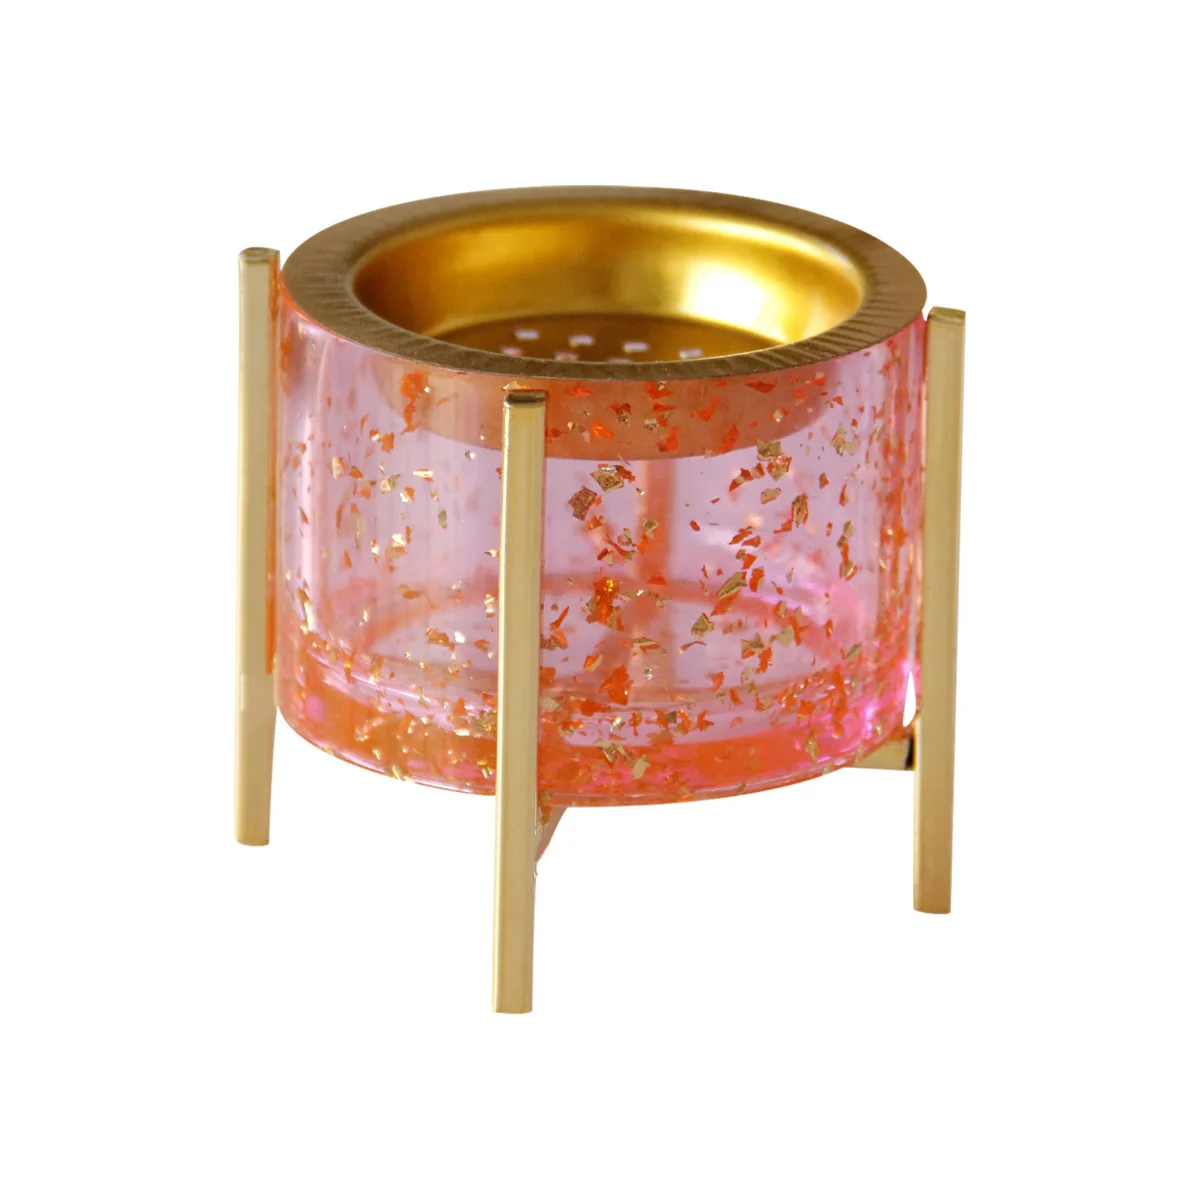 

Four-corner bracket pink gold resin metal table top ornament aoud incense burner